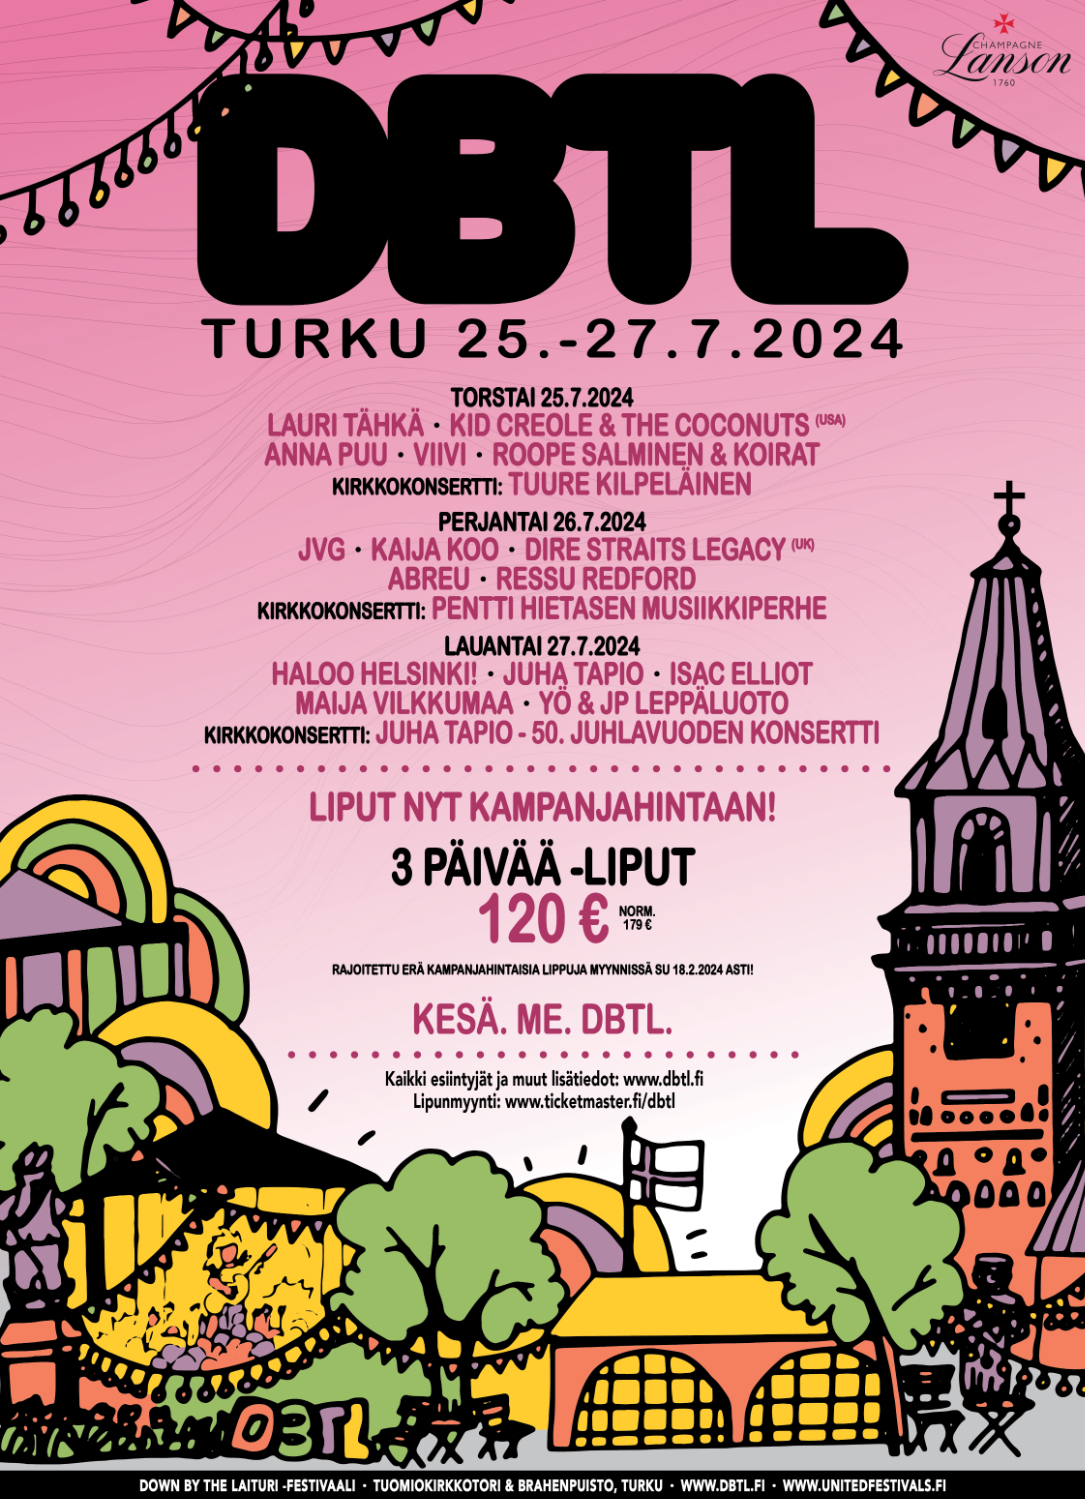 DBTL-kaupunkifestivaalit juhlitaan Turussa heinäkuussa!